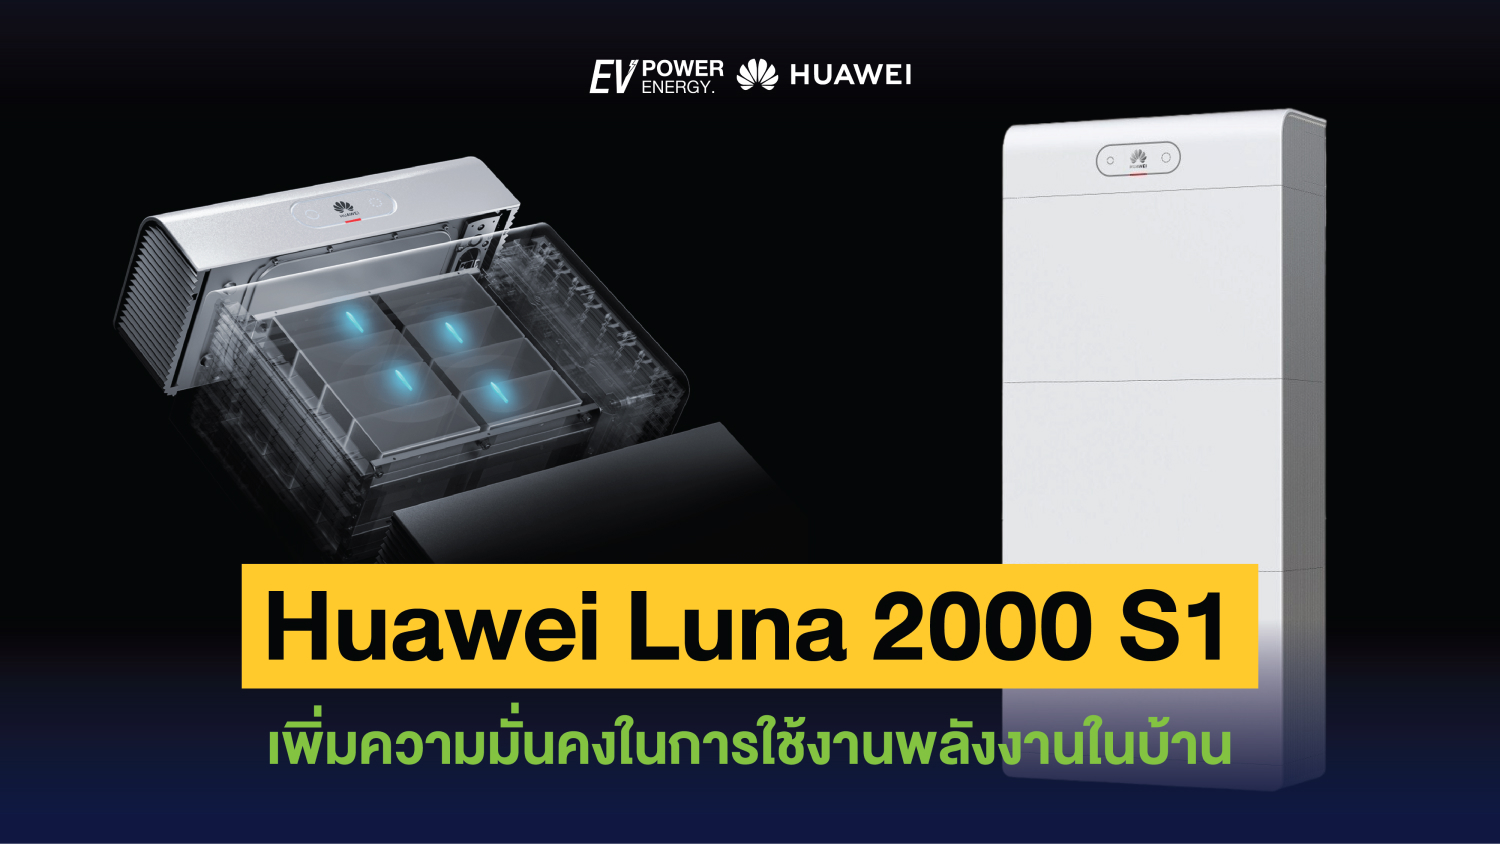 Huawei Luna 2000 S1 เพิ่มความมั่นคงในการใช้งานพลังงานในบ้าน 1